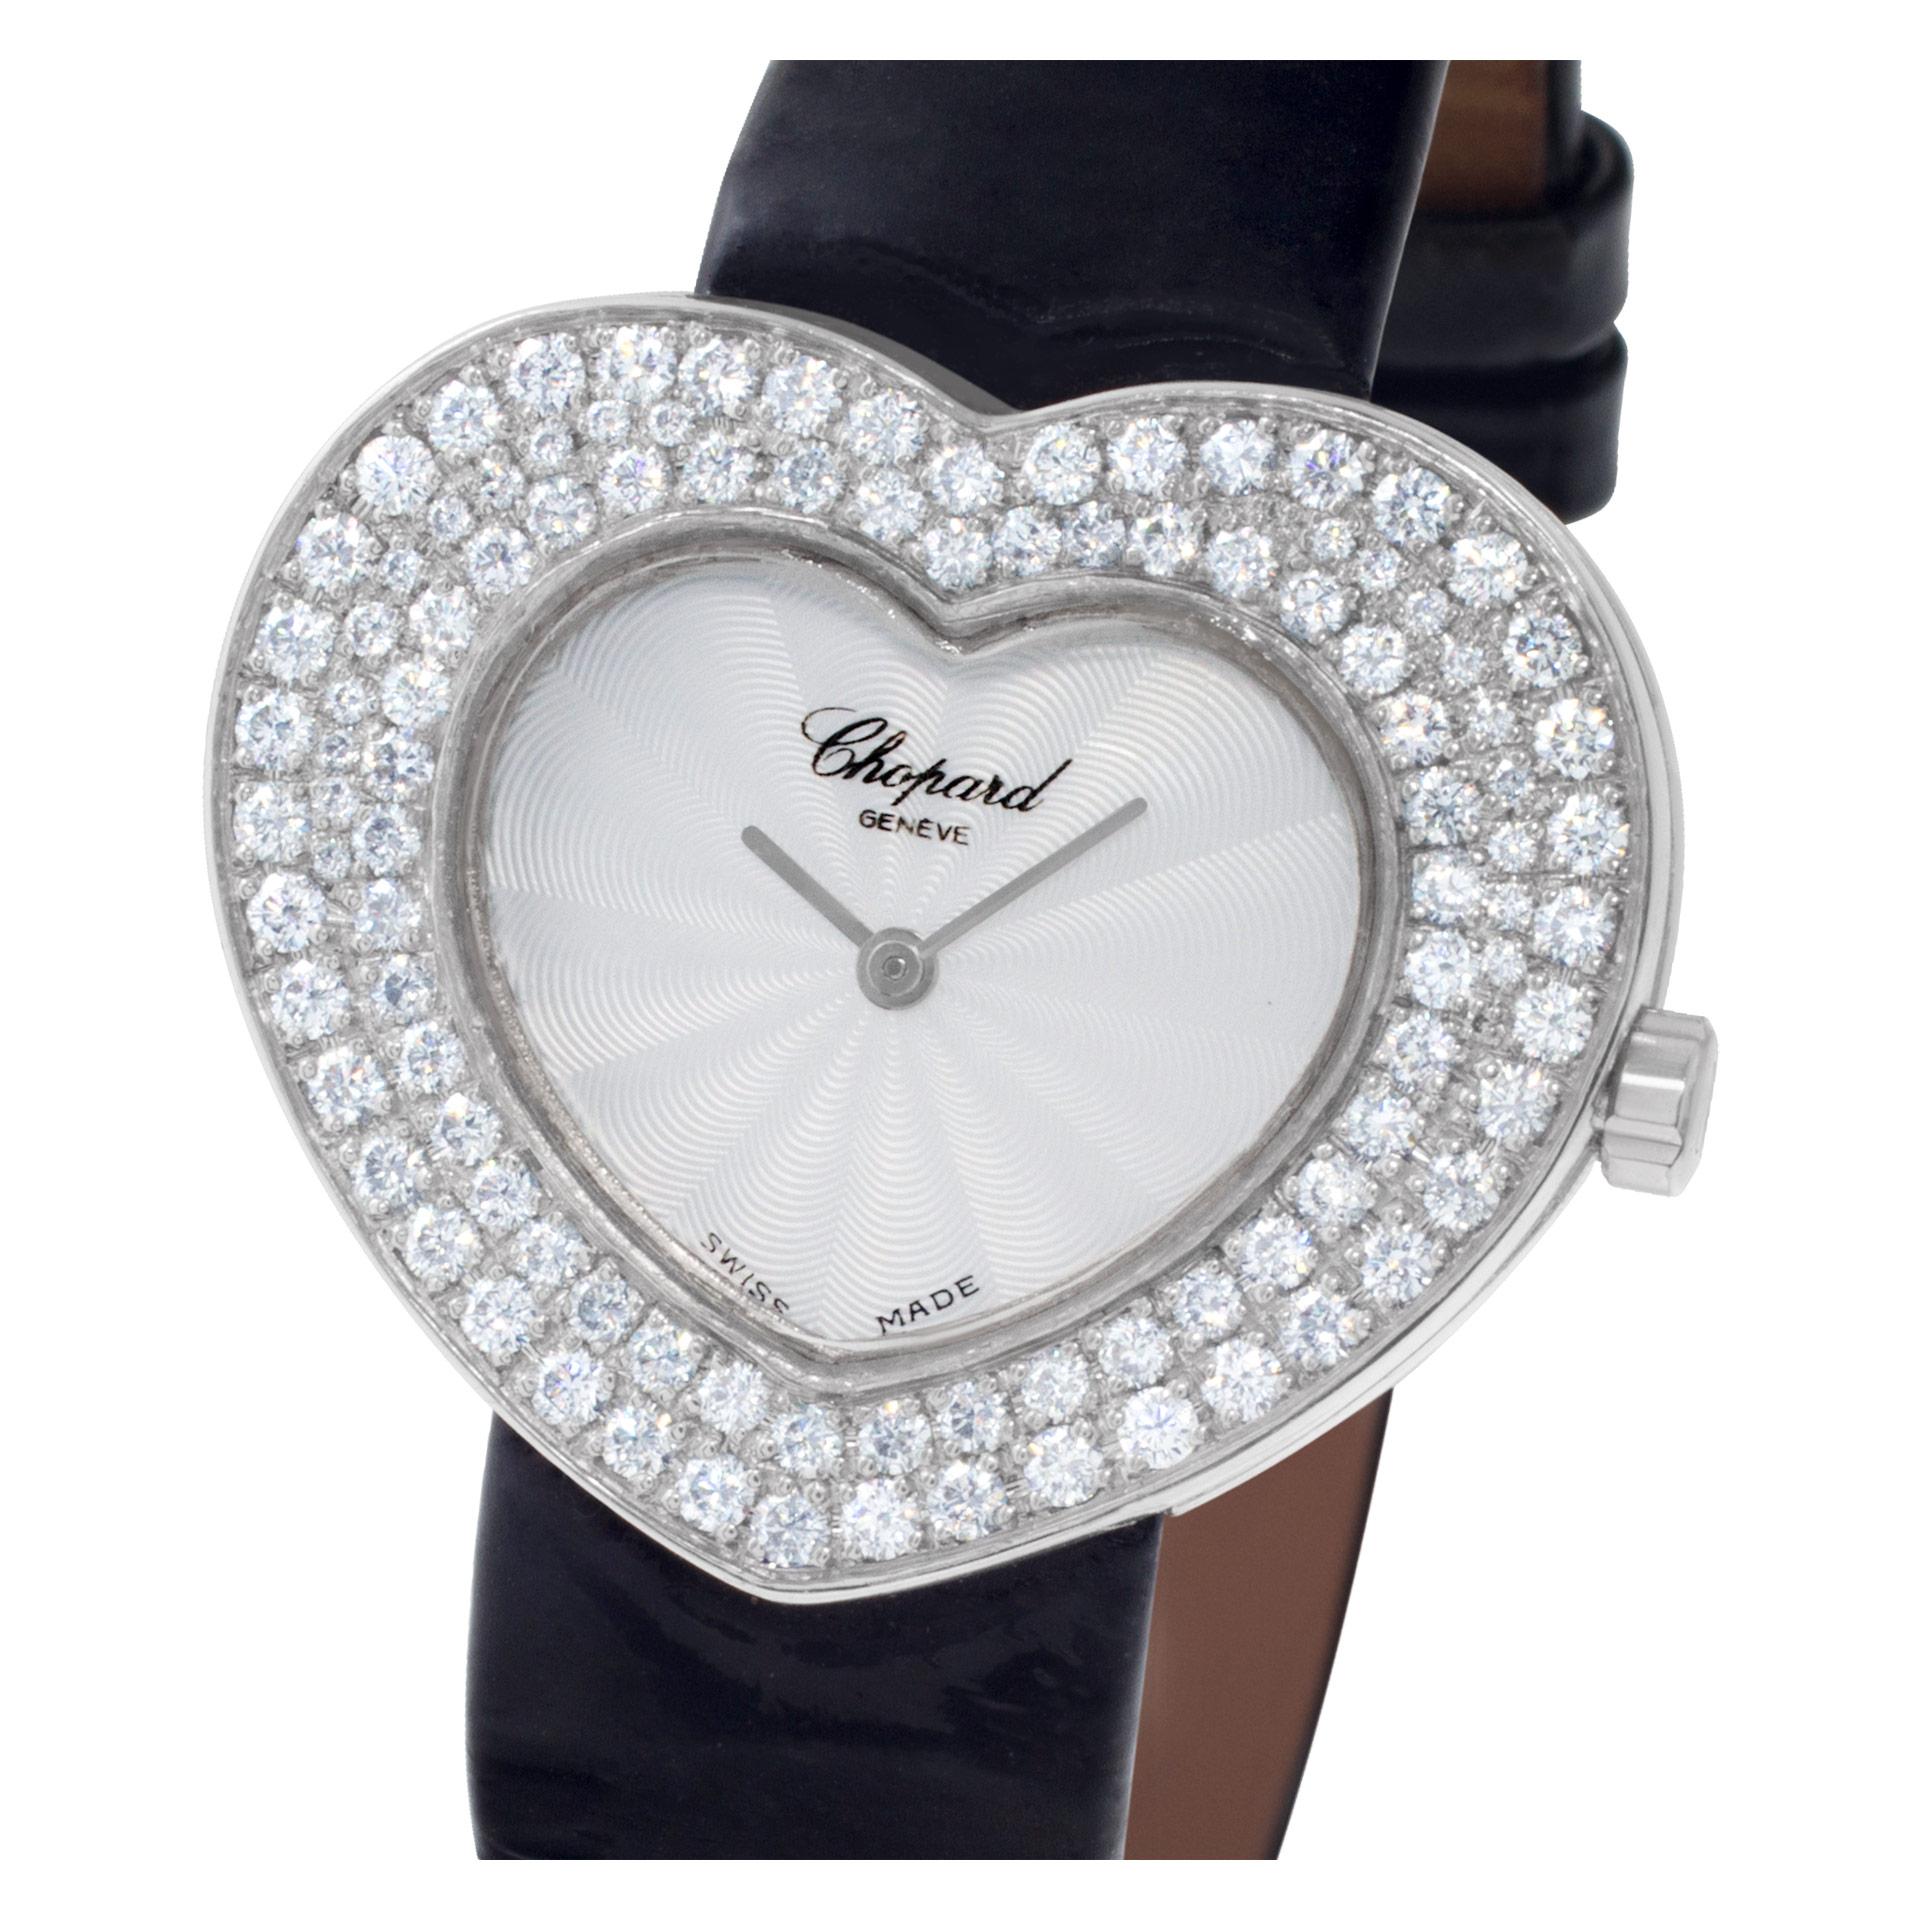 Chopard Heart Watch in 18k White Gold with Custom Diamond Bezel Ref. 5631 1